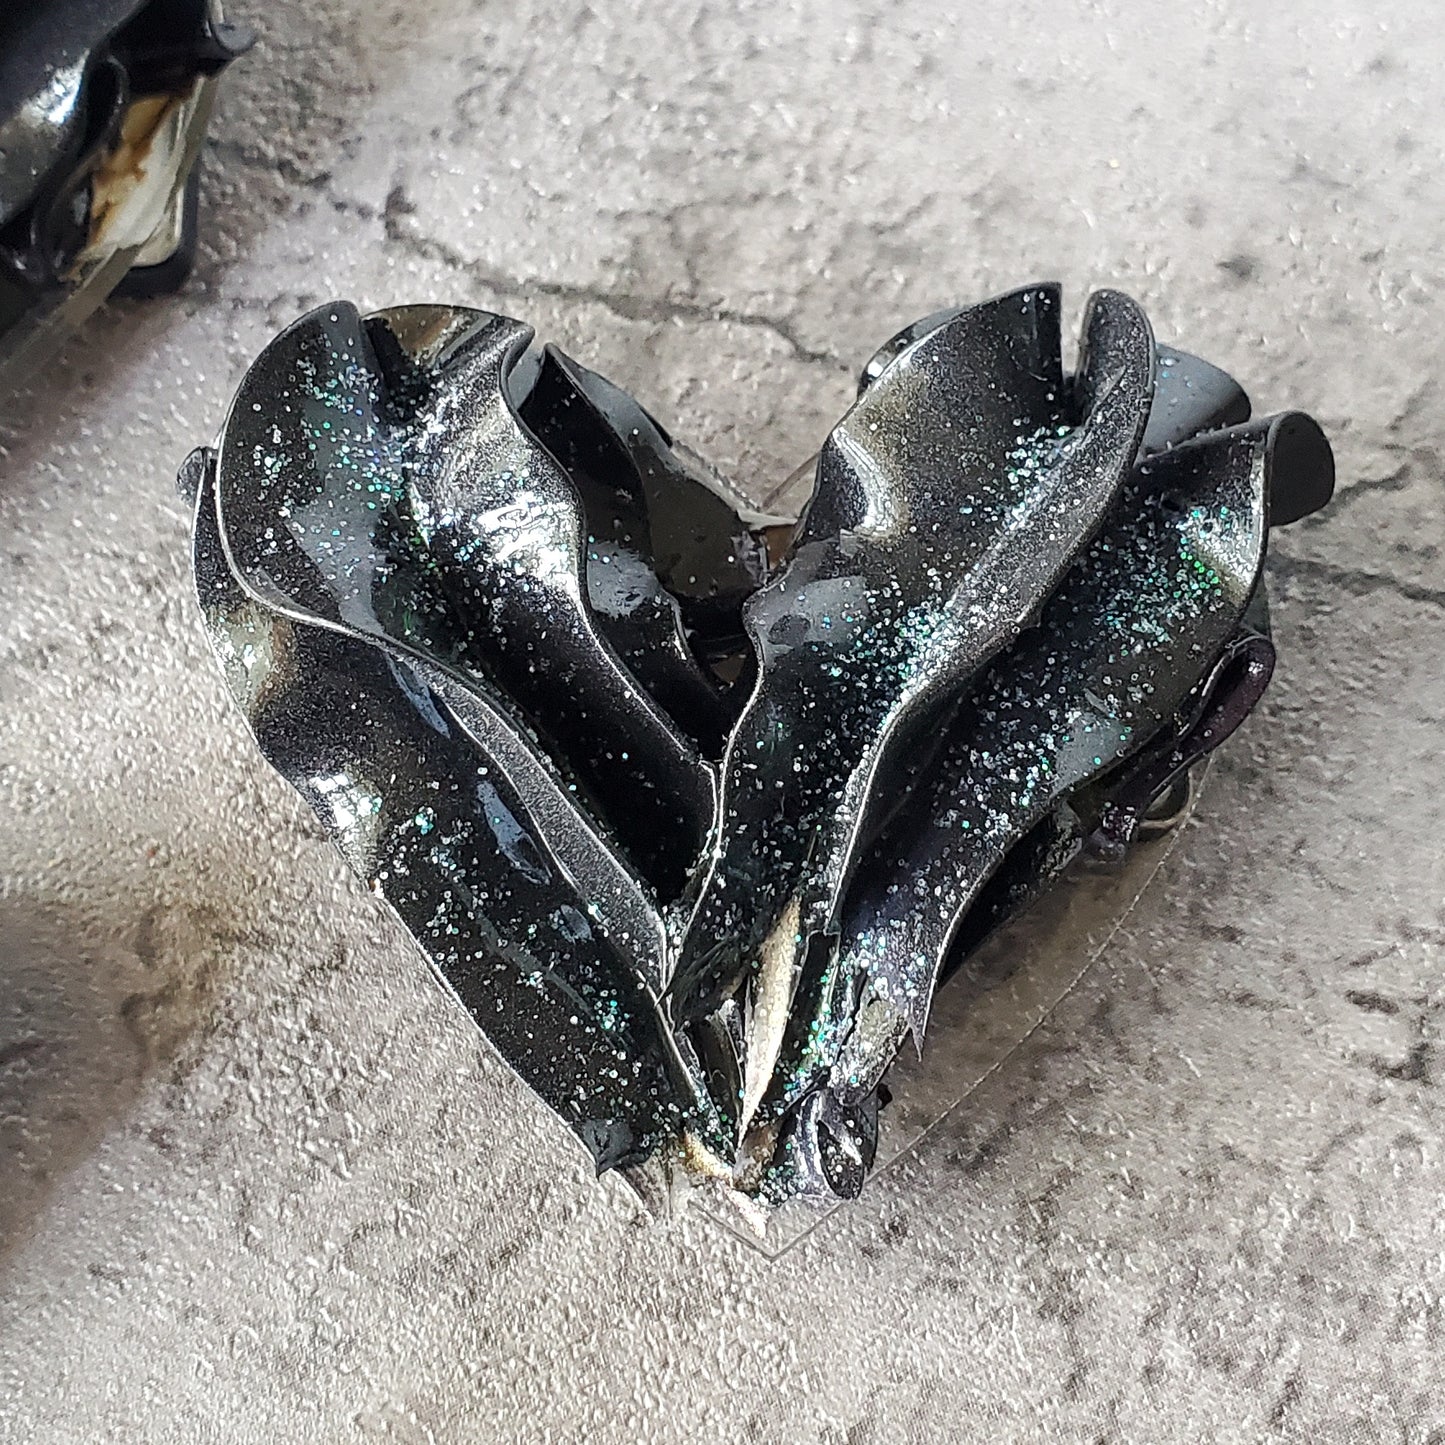 Buttercream Heart Sculpture Magnetic Brooch Black